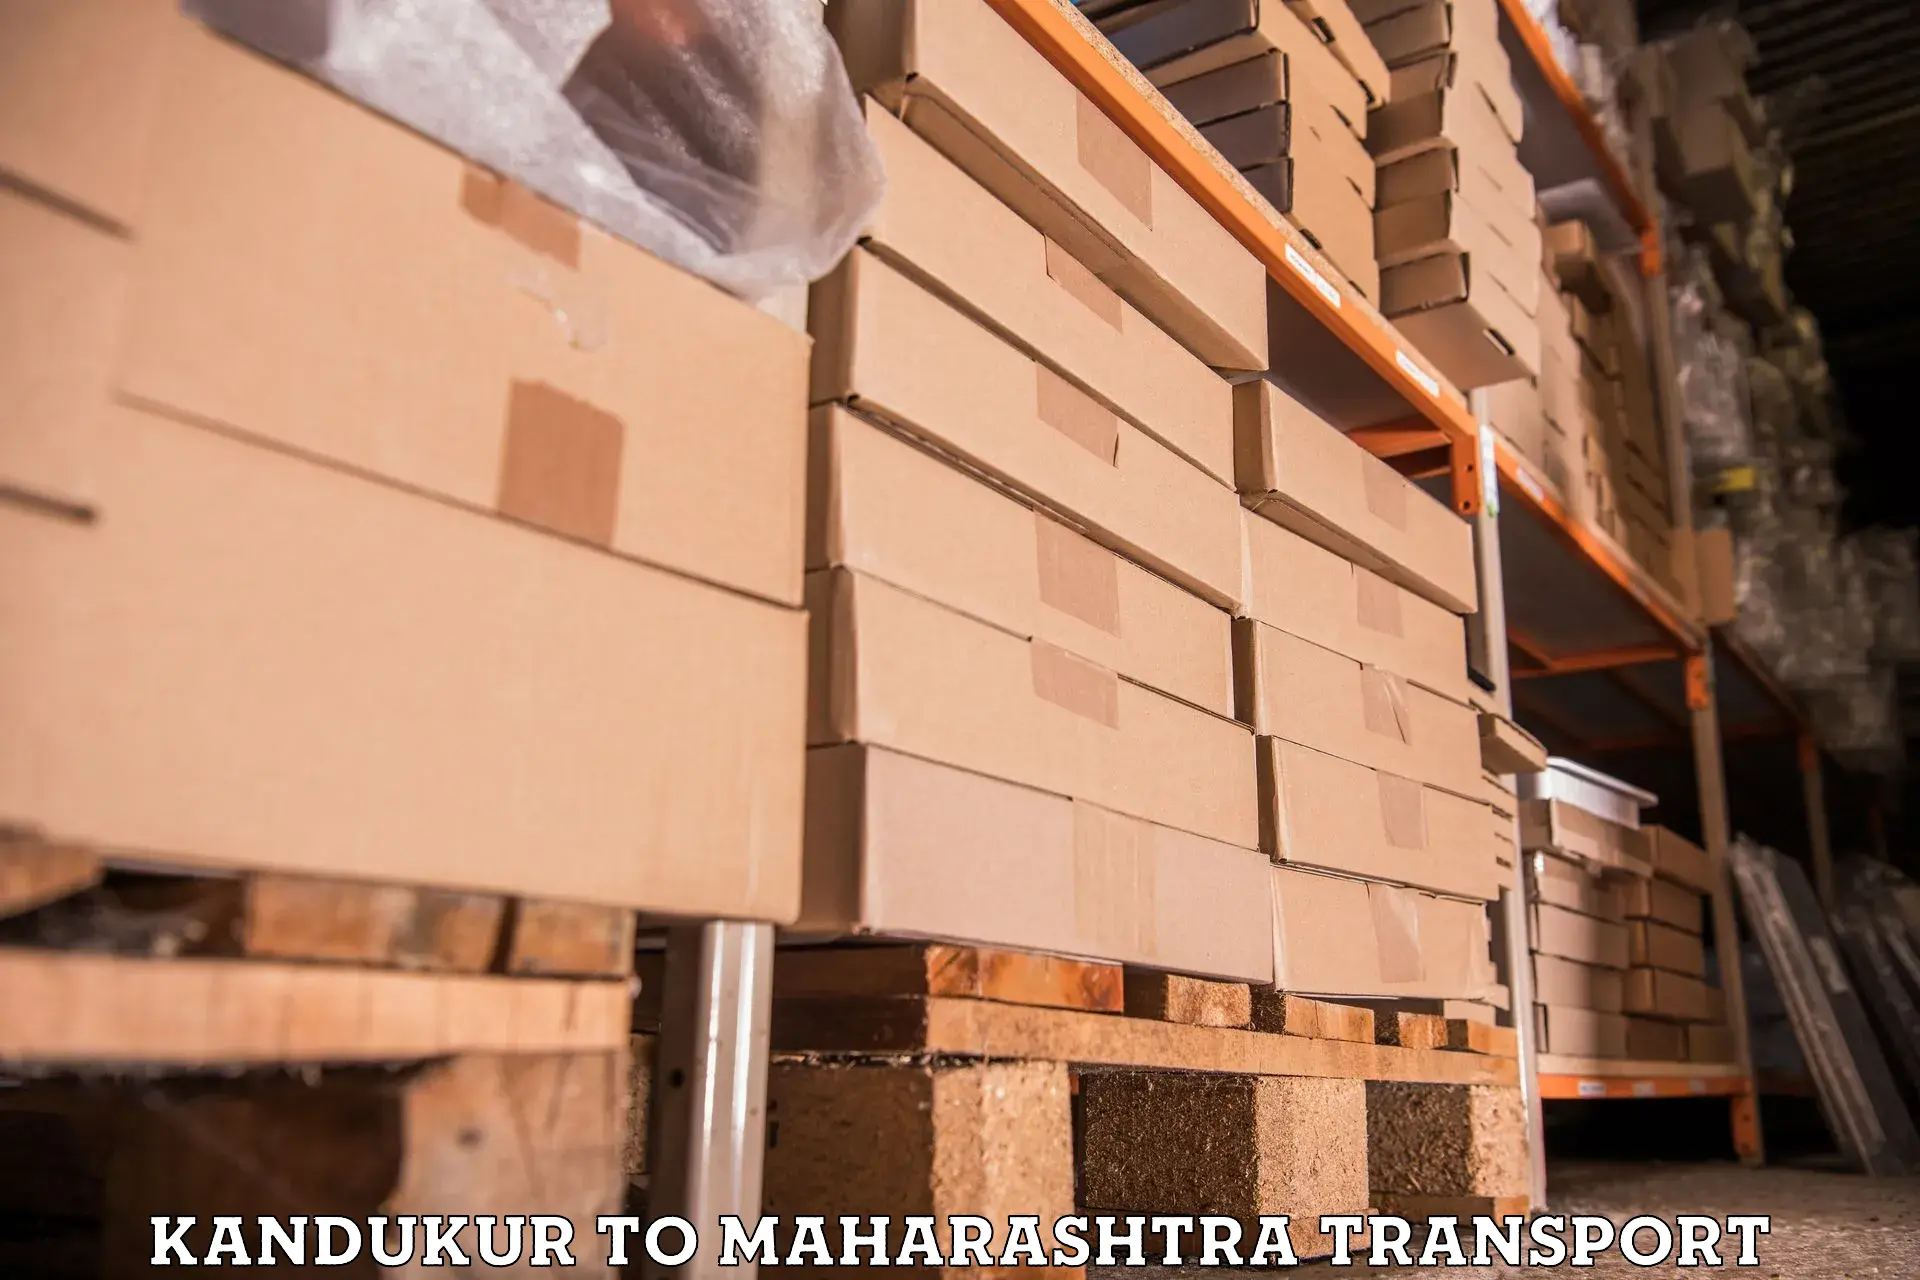 Furniture transport service in Kandukur to Uran Islampur